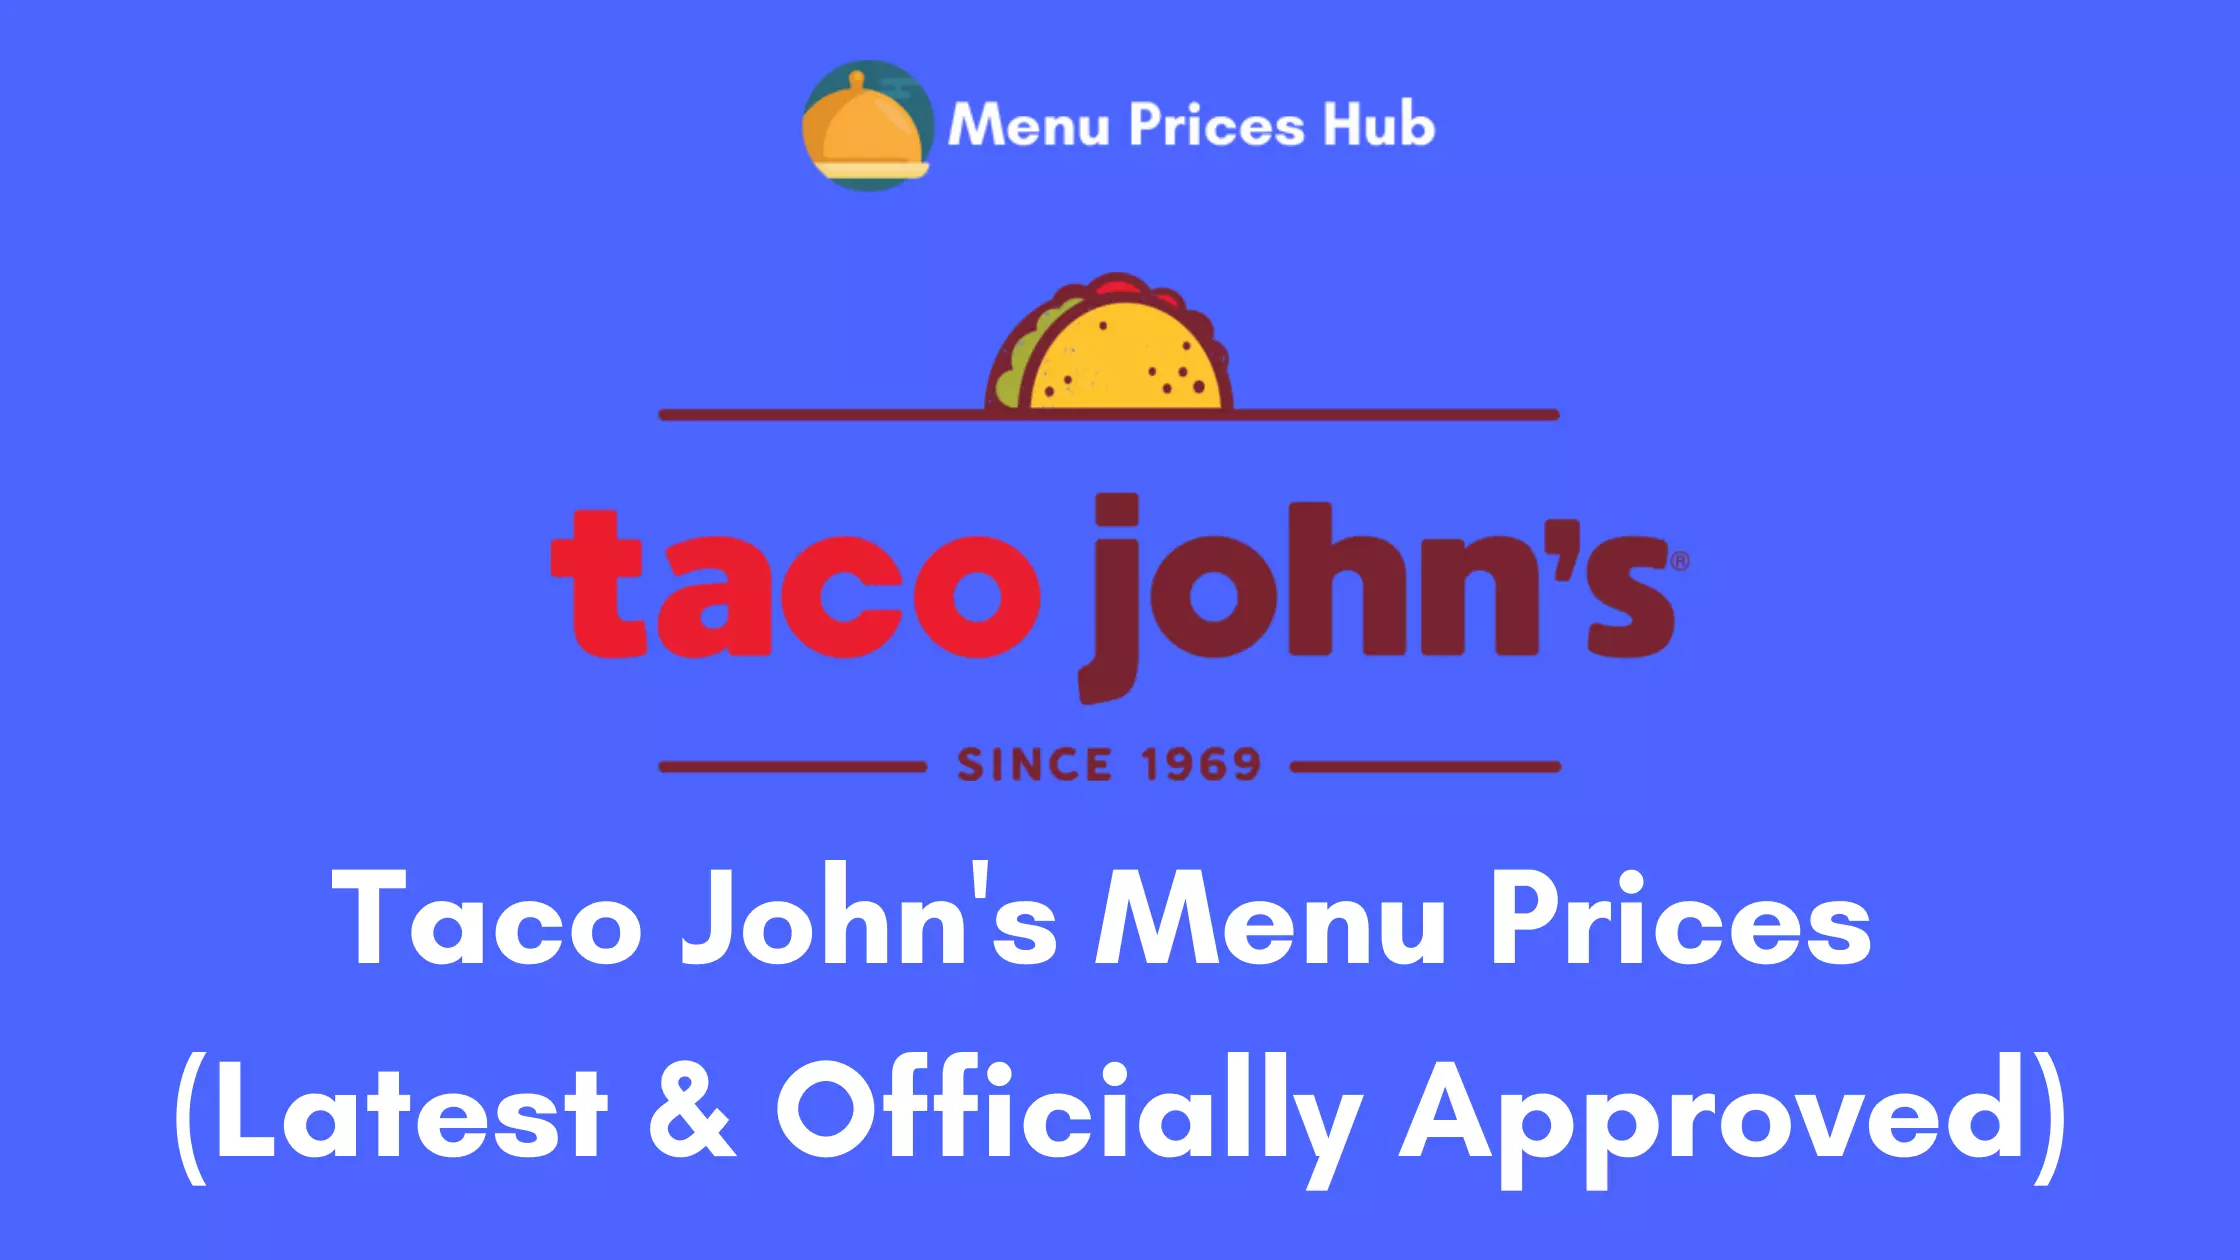 Taco John’s Menu Prices